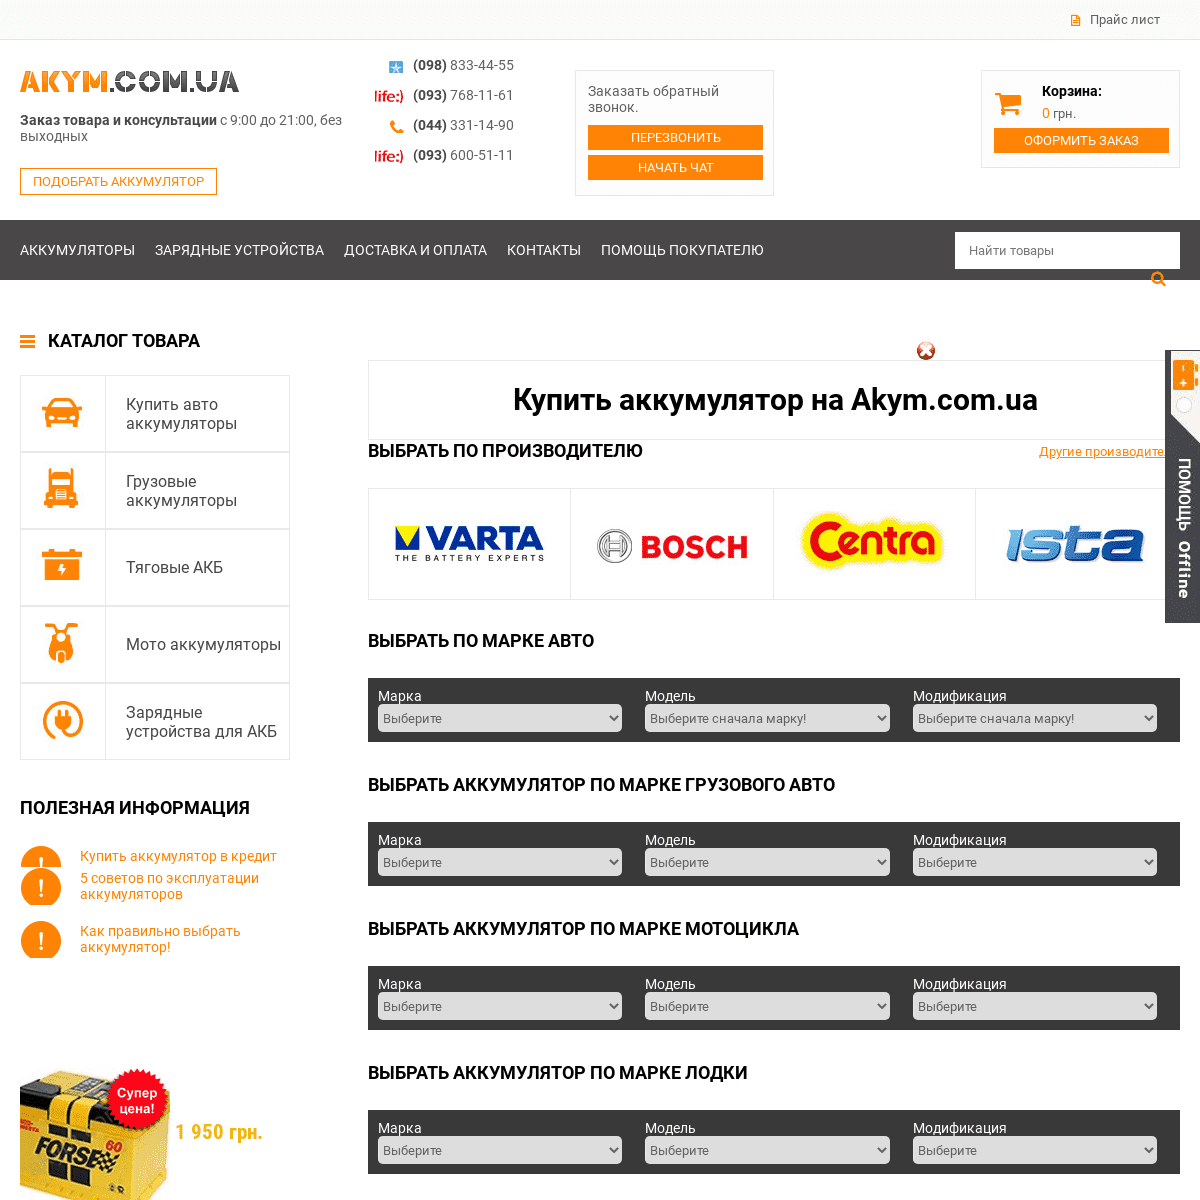 A complete backup of https://akym.com.ua